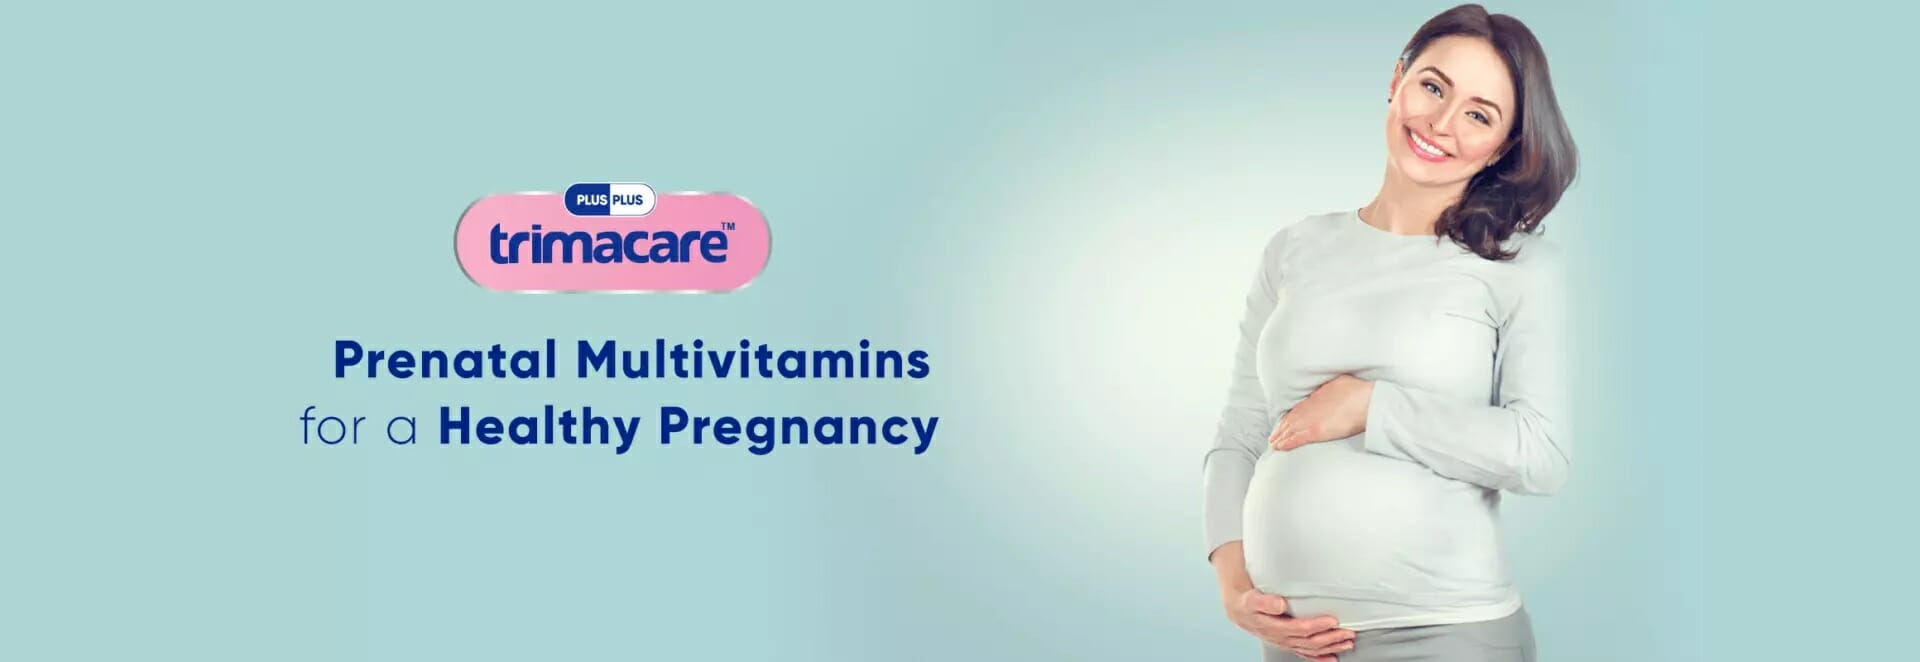 prenatal-vitamins-205385dc